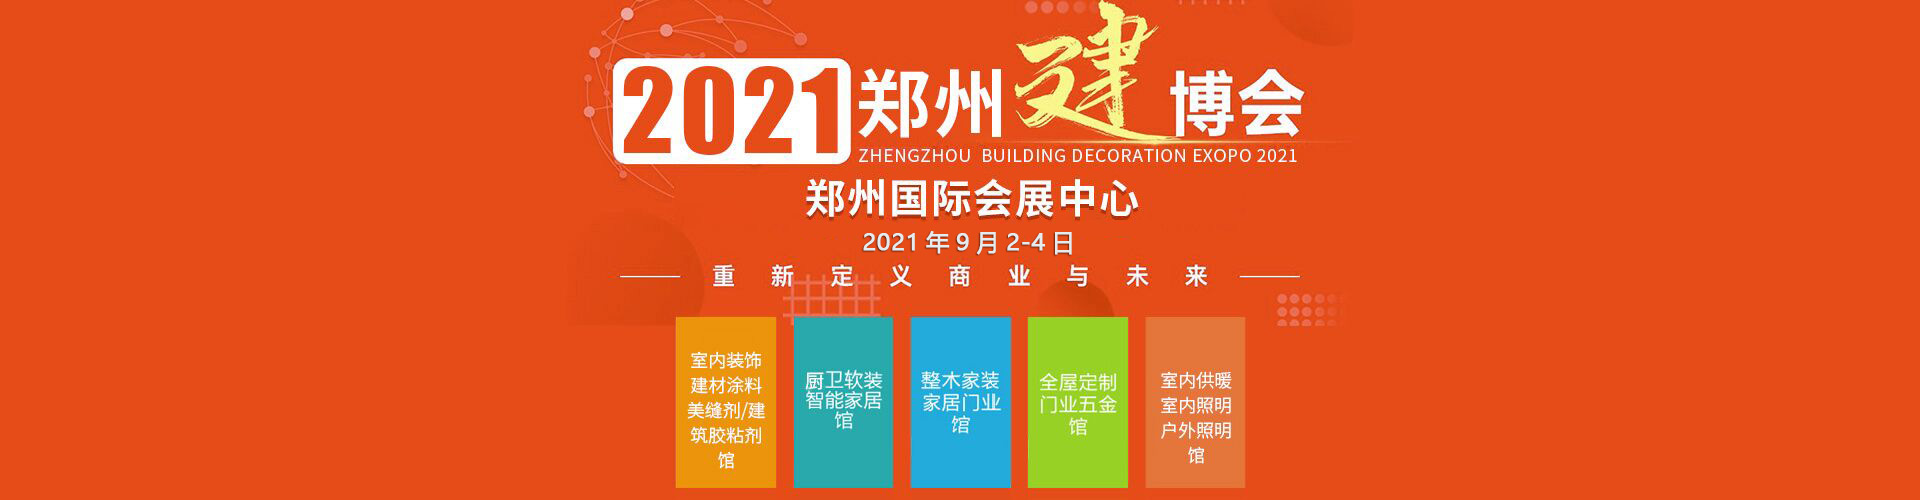 吊顶展讯2022郑州吊顶模块展新通知发布 预览